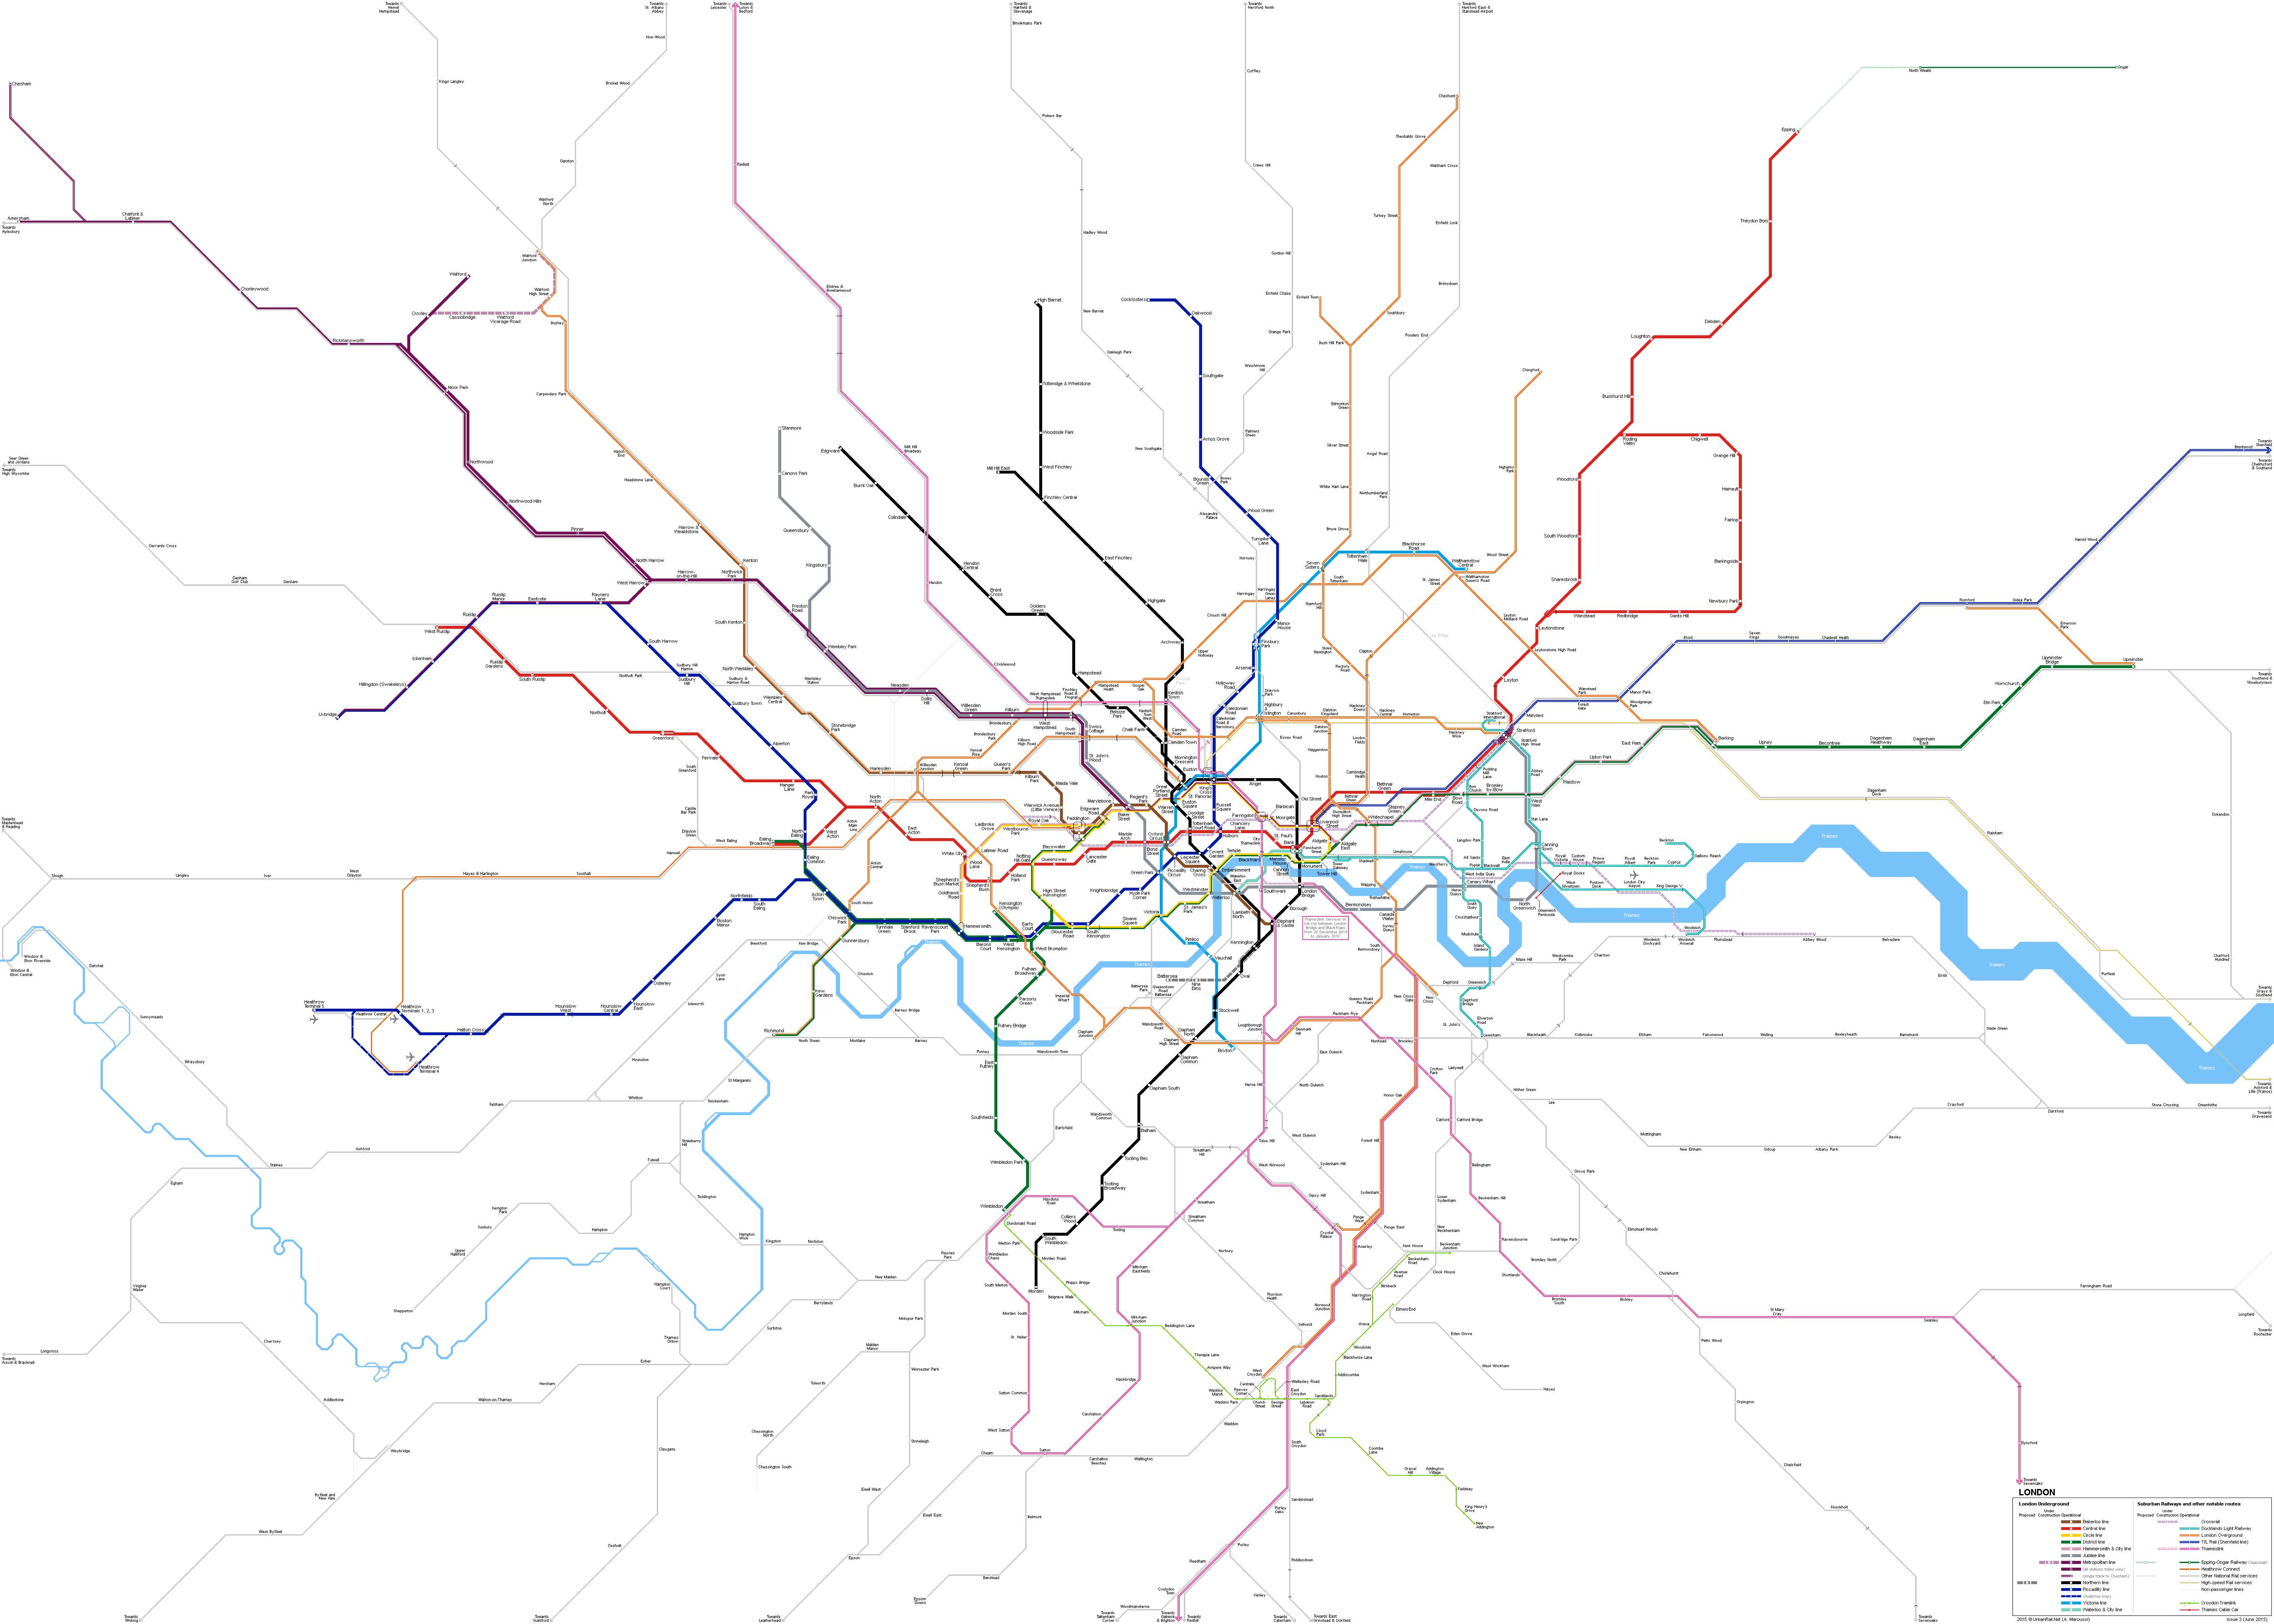 Metro map of London, UK